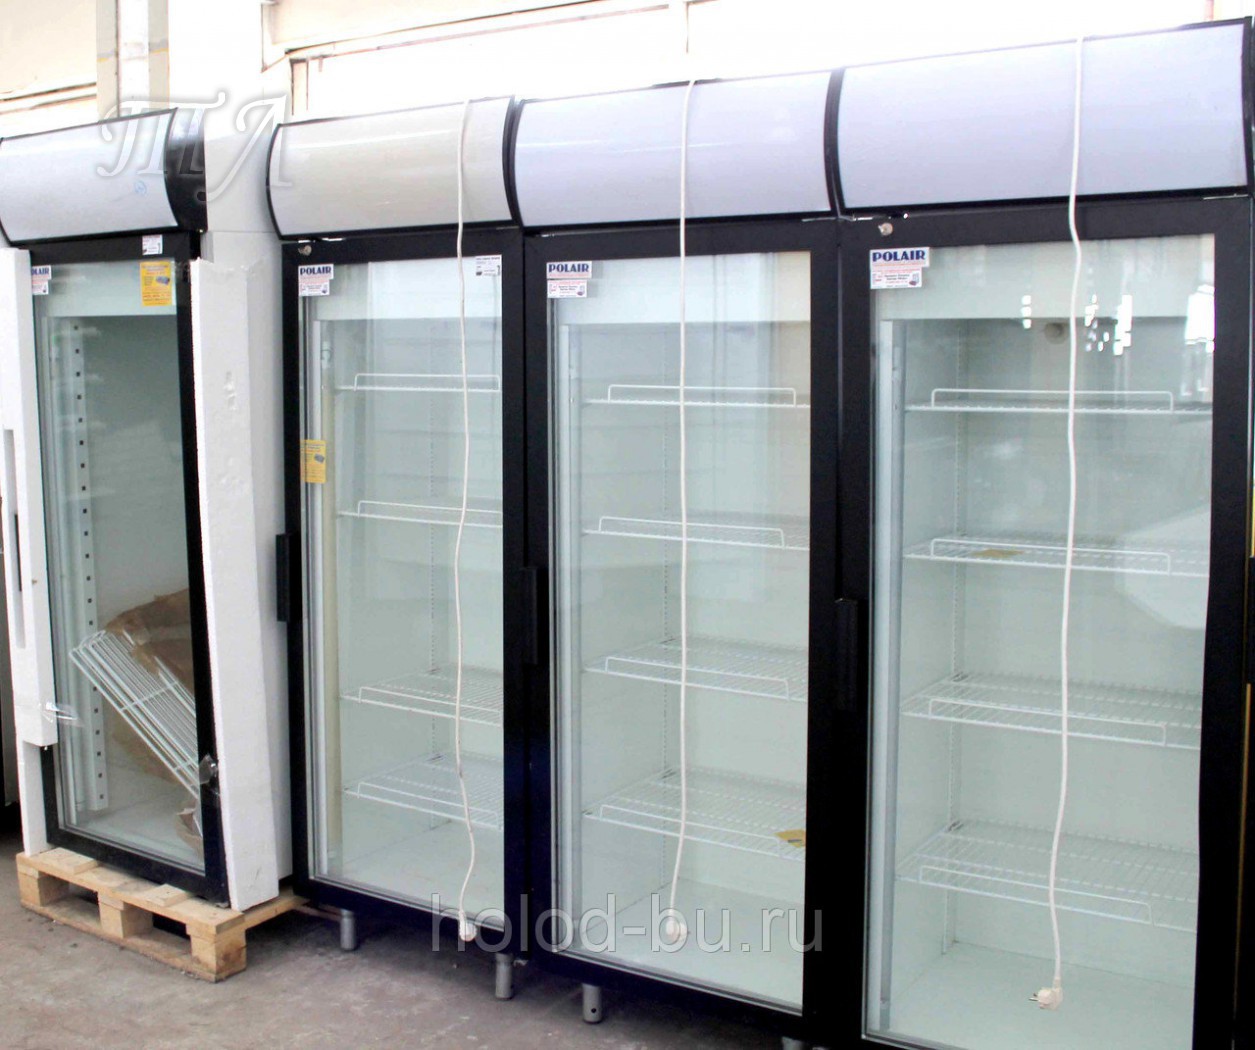 Холодильный шкаф Полаир dm105 s